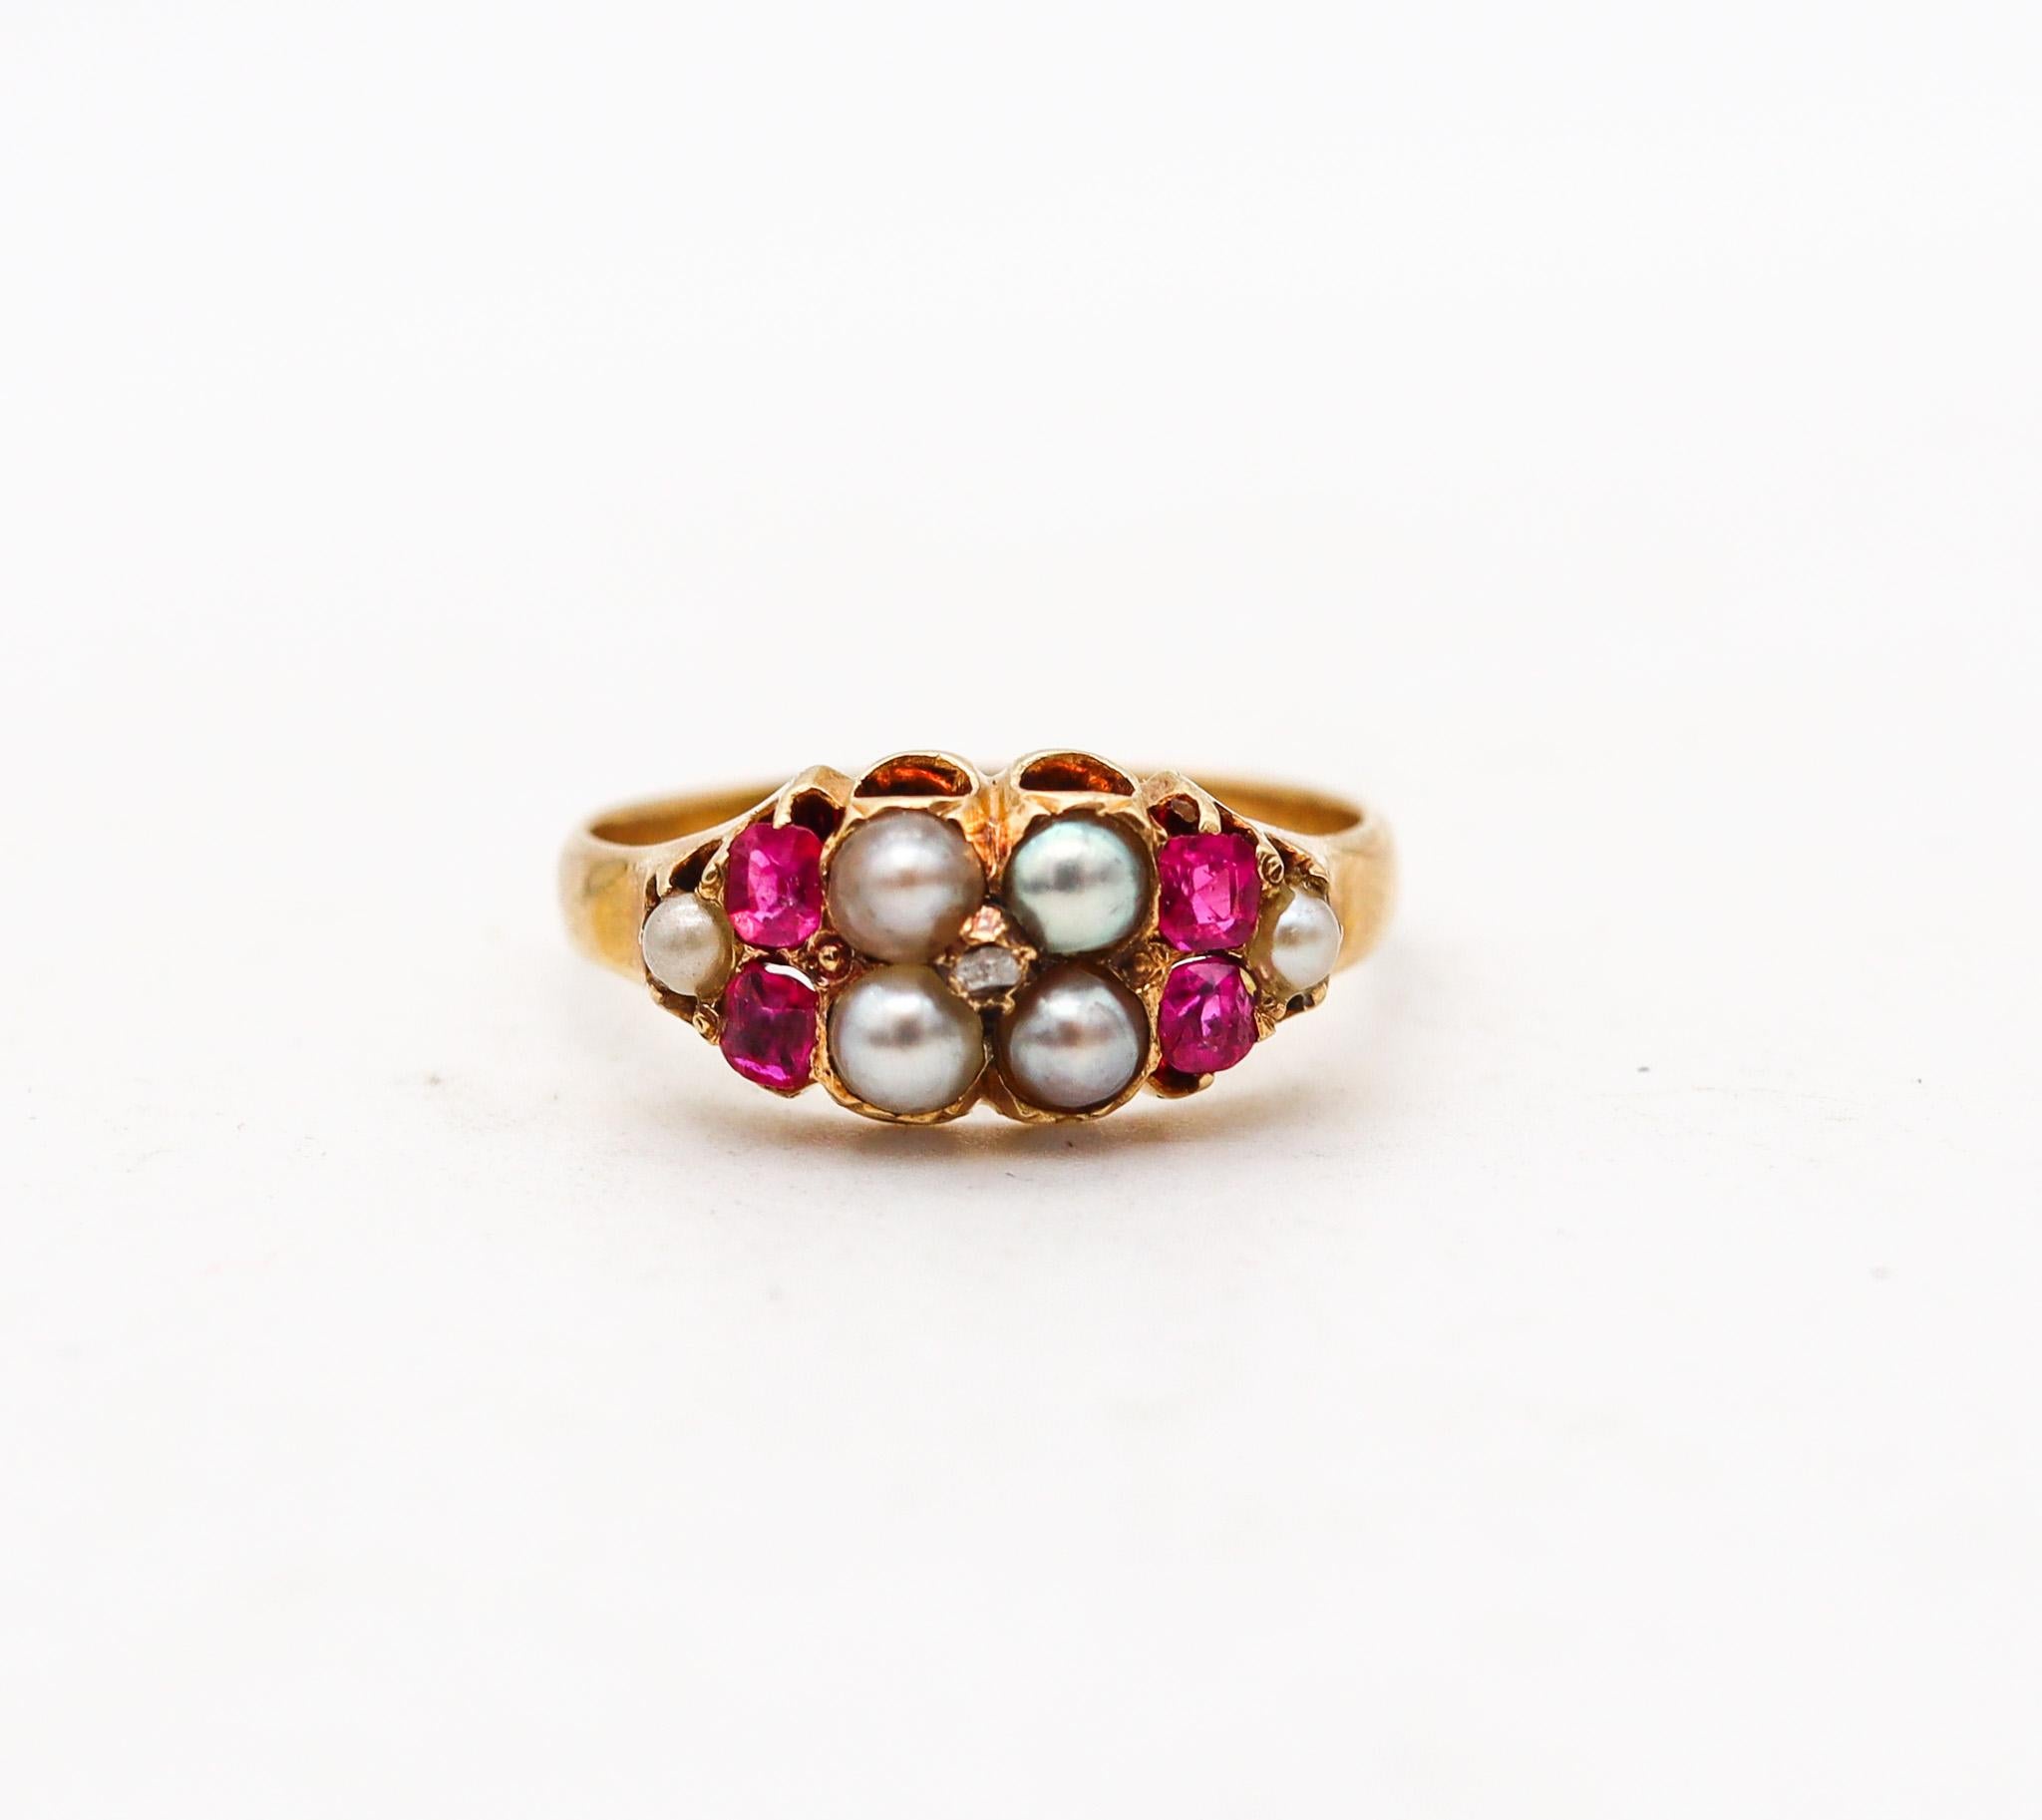 Ein europäischer viktorianischer Ring mit Rubinen und Perlen.

Schöner und zierlicher antiker Ring, entstanden in Europa im 19. Jahrhundert, ca. 1880. Dieser Ring ist höchstwahrscheinlich britisch und wurde aus massivem Gelbgold von 18 Karat mit